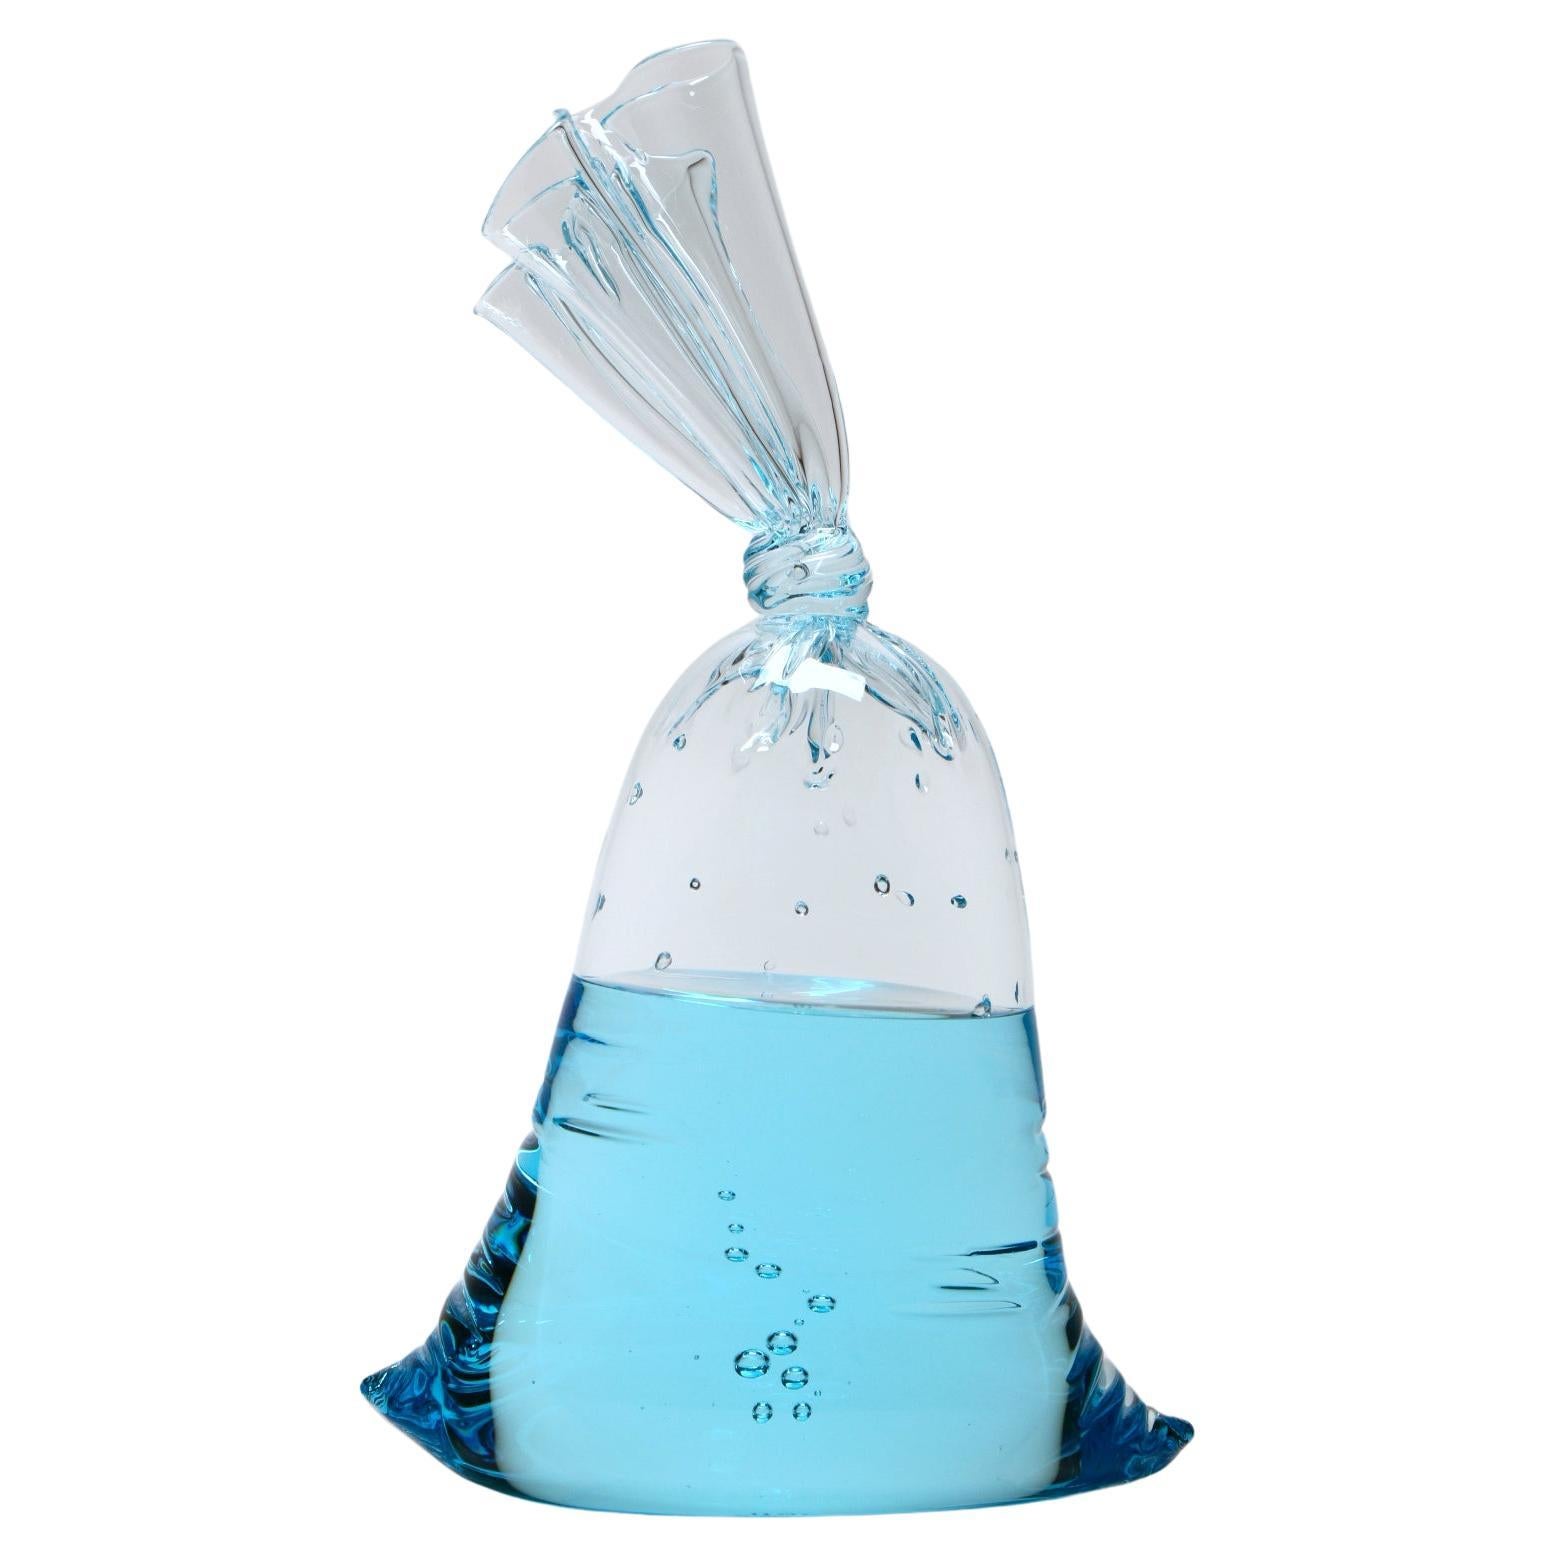 Petit sac à eau en verre bleu - sculpture en verre hyperréaliste de Dylan Martinez